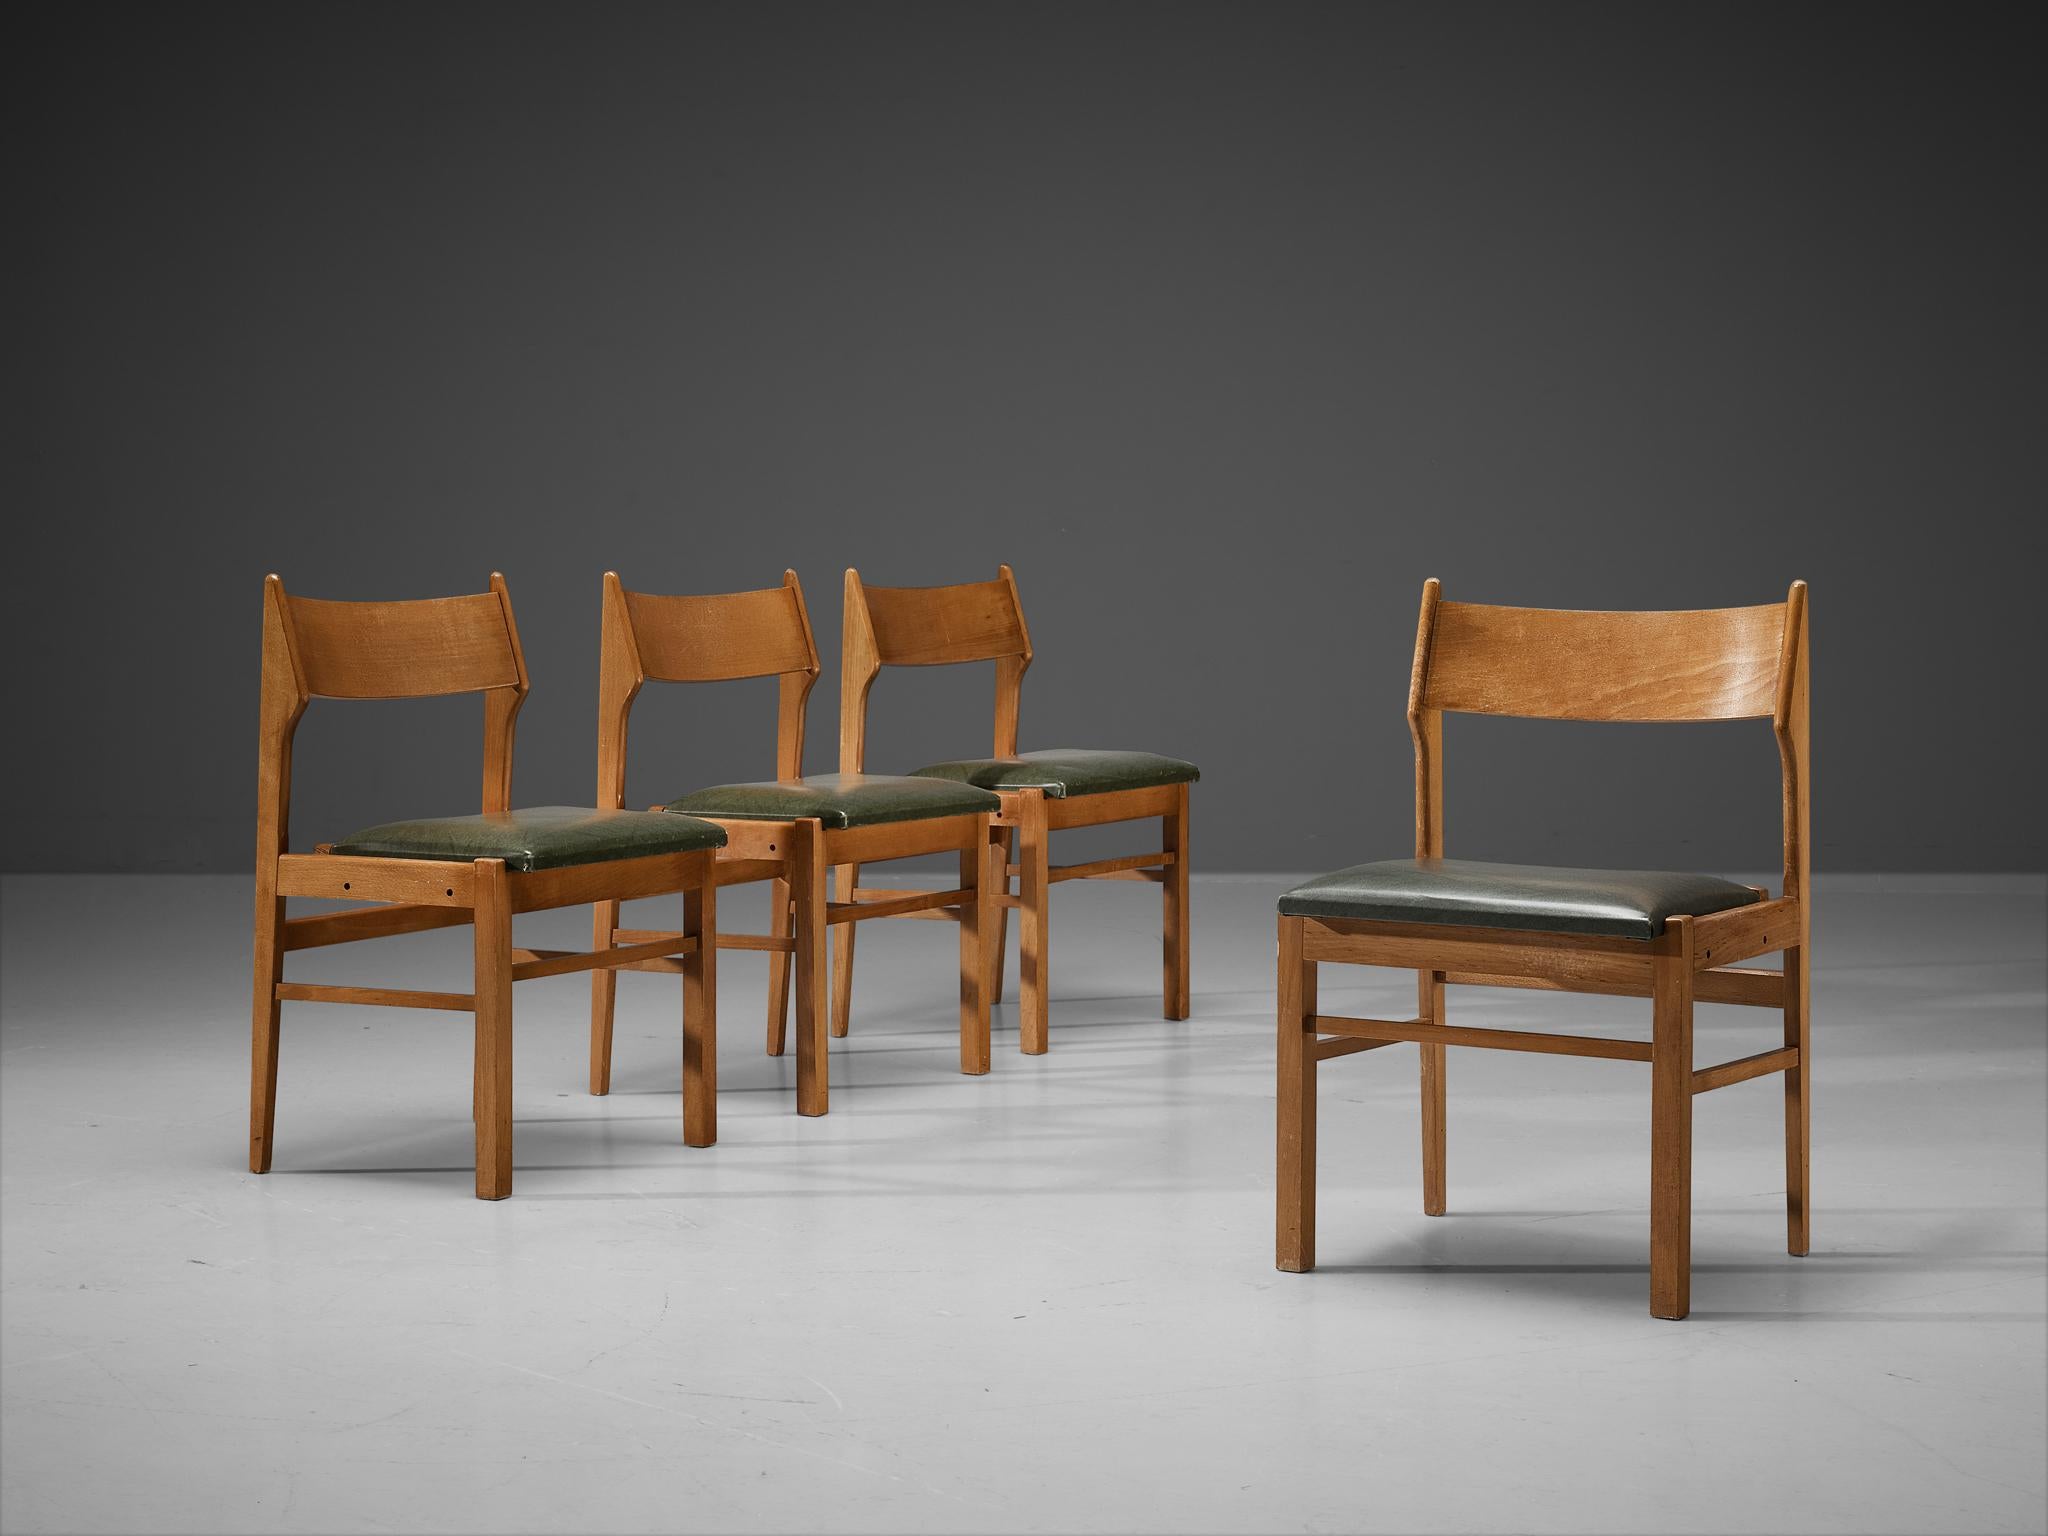 Chaises de salle à manger, bois, simili-cuir vert foncé, Pays-Bas, années 1960. 

Modeste ensemble de quatre chaises de salle à manger hollandaises. Son design présente des lignes claires et un dossier aéré. Les sièges en similicuir vert foncé